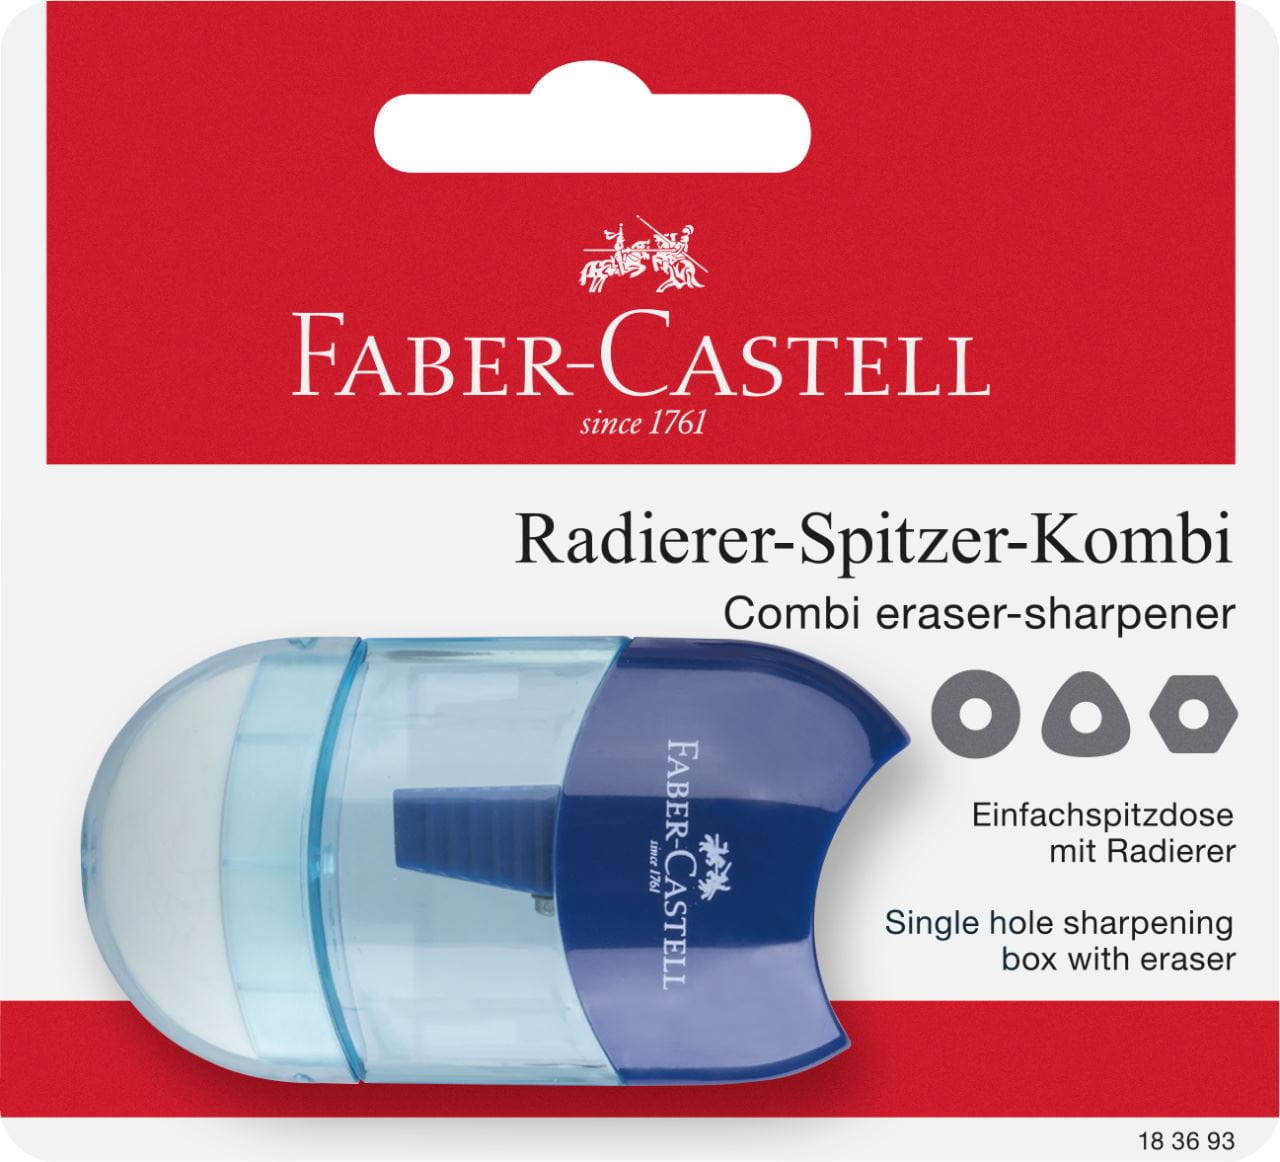 Faber-Castell - Mini eraser-sharpener combi, set of 1, pink